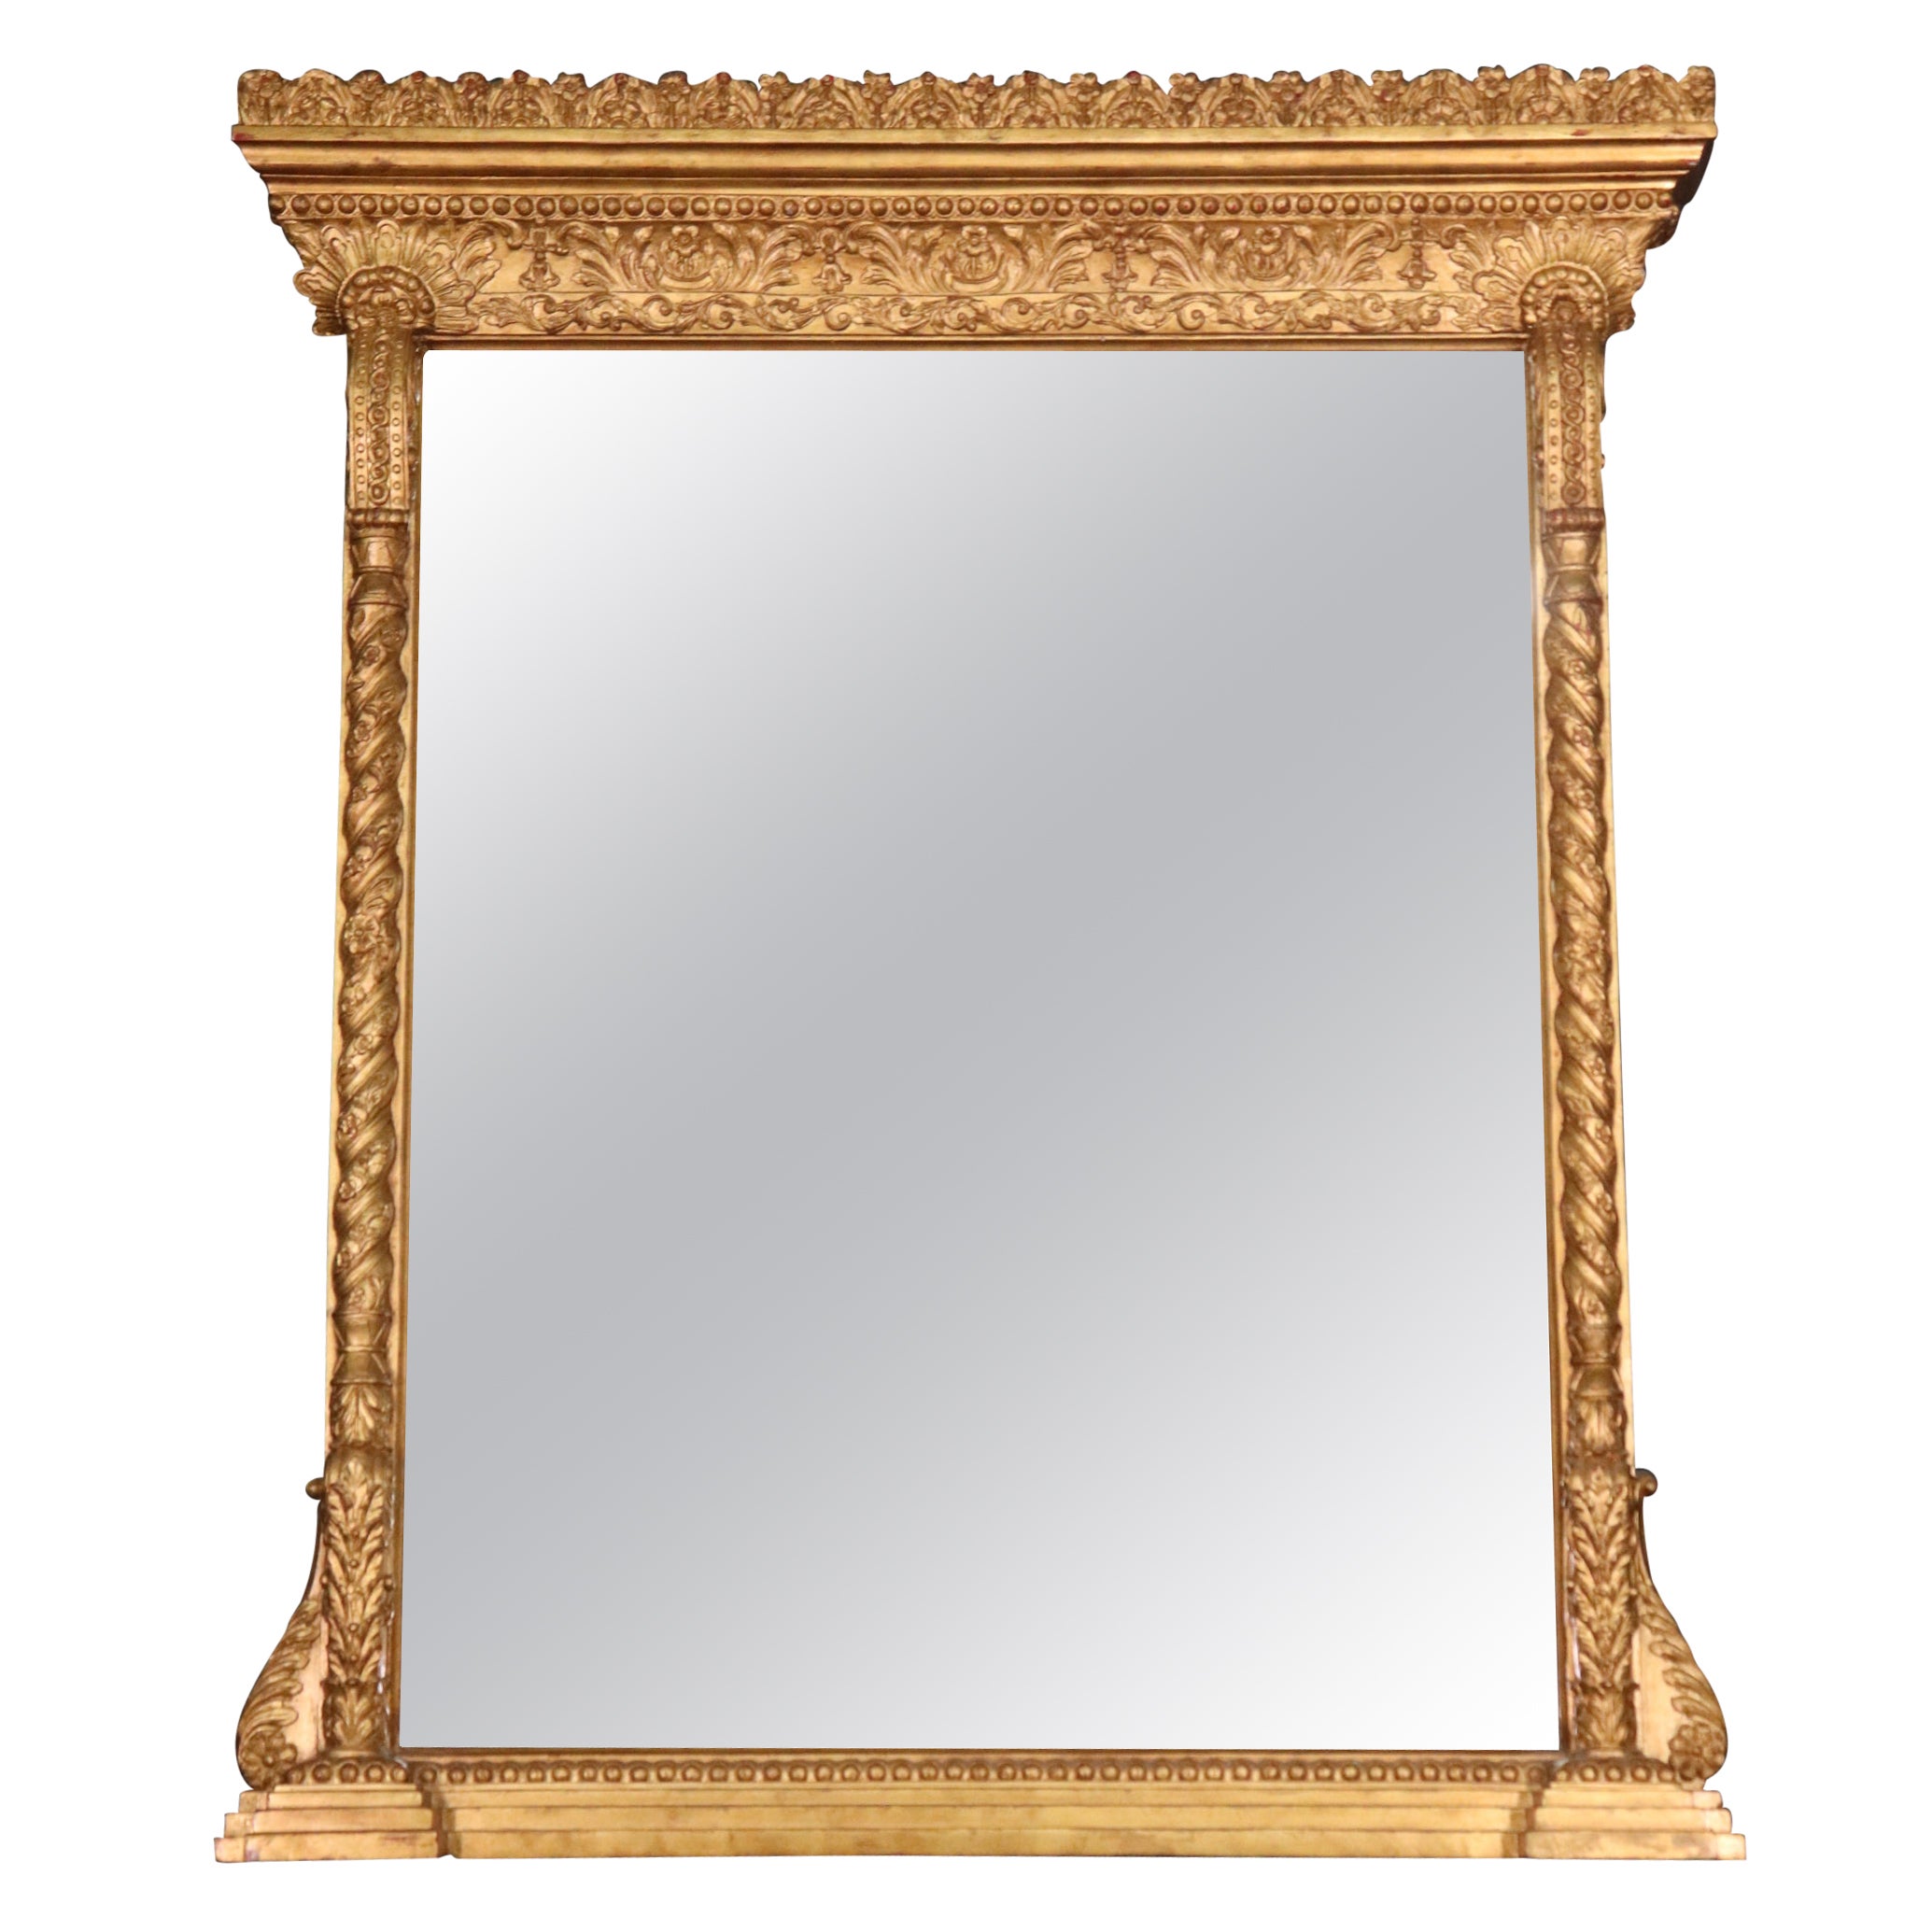 Victorian Style Genuine Gold Leaf Gilded Martha Stewart Mantel Mantle Mirror